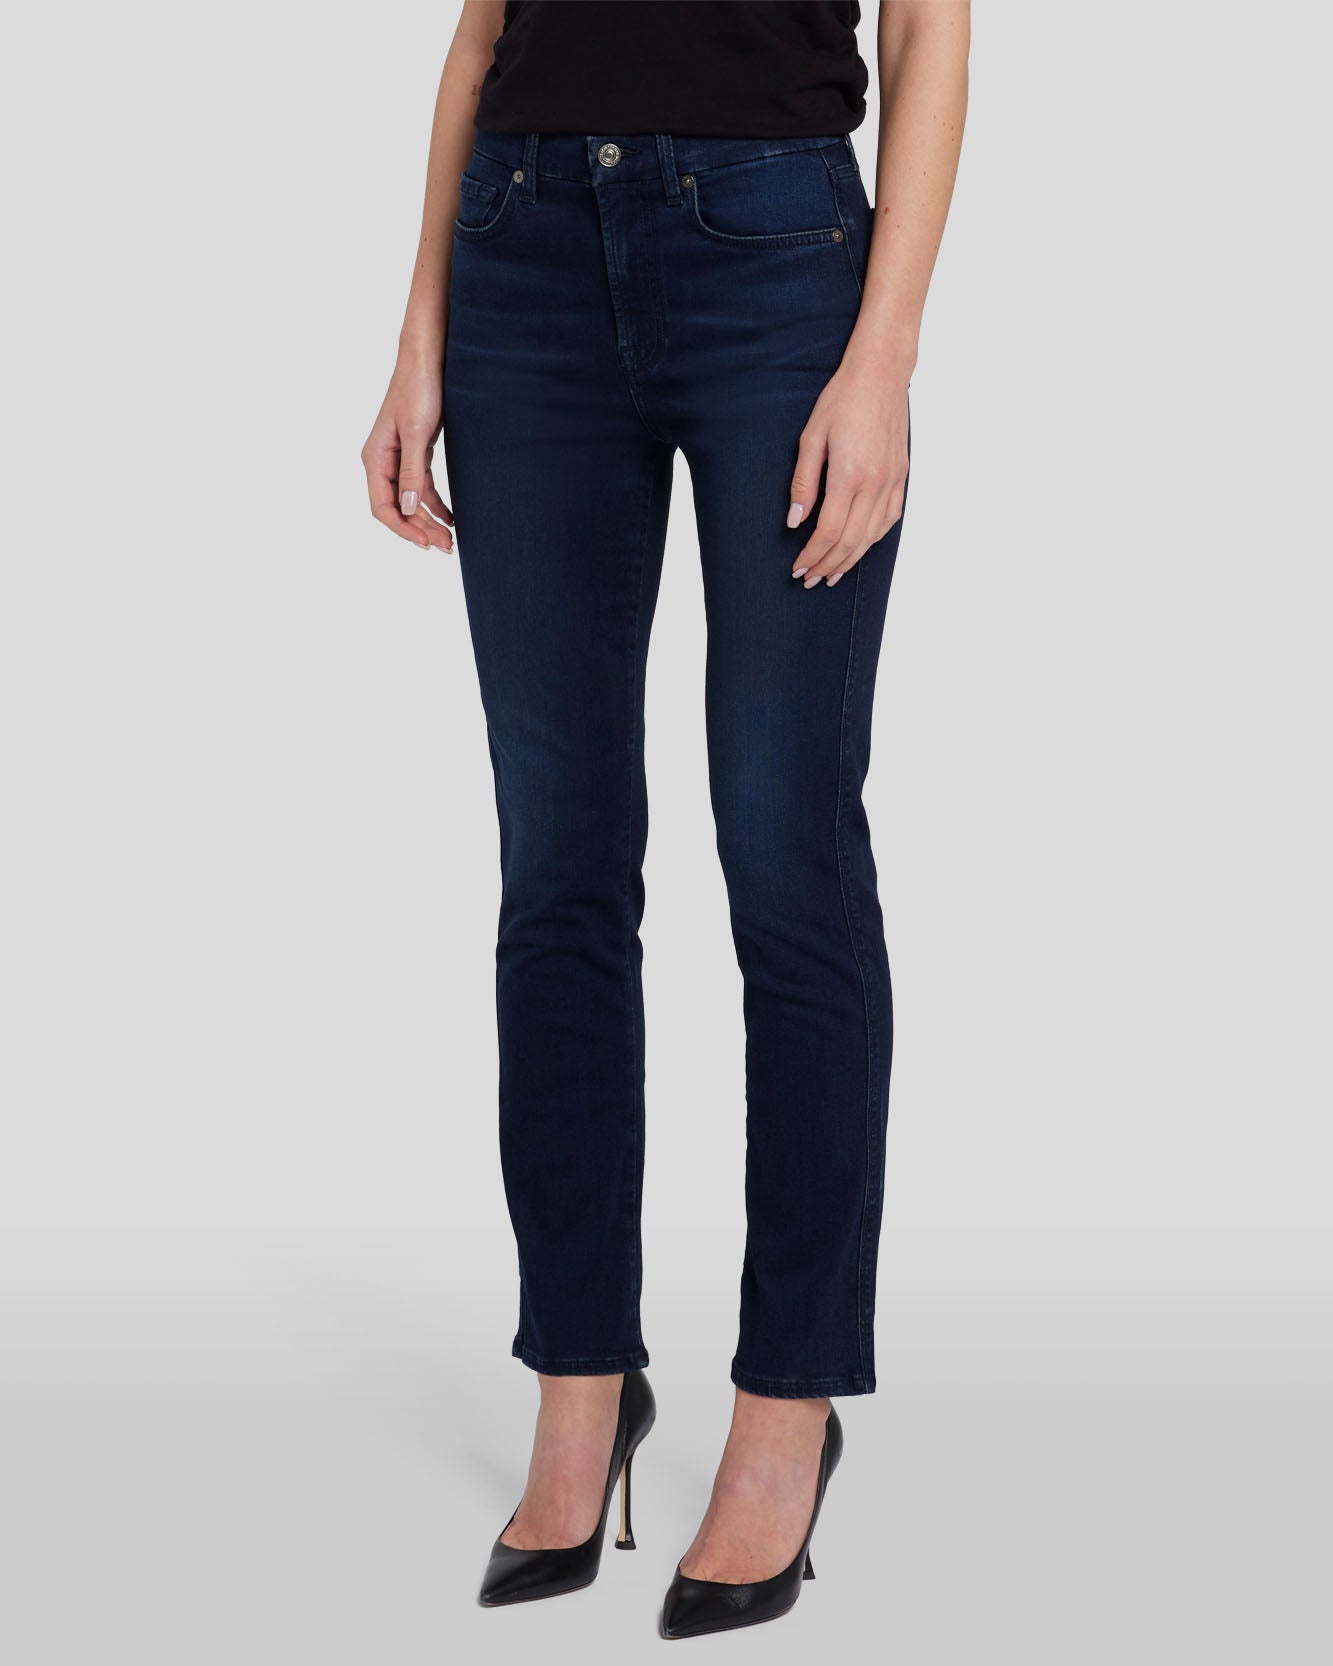 Women's Straight Leg Jeans - Denim for Women